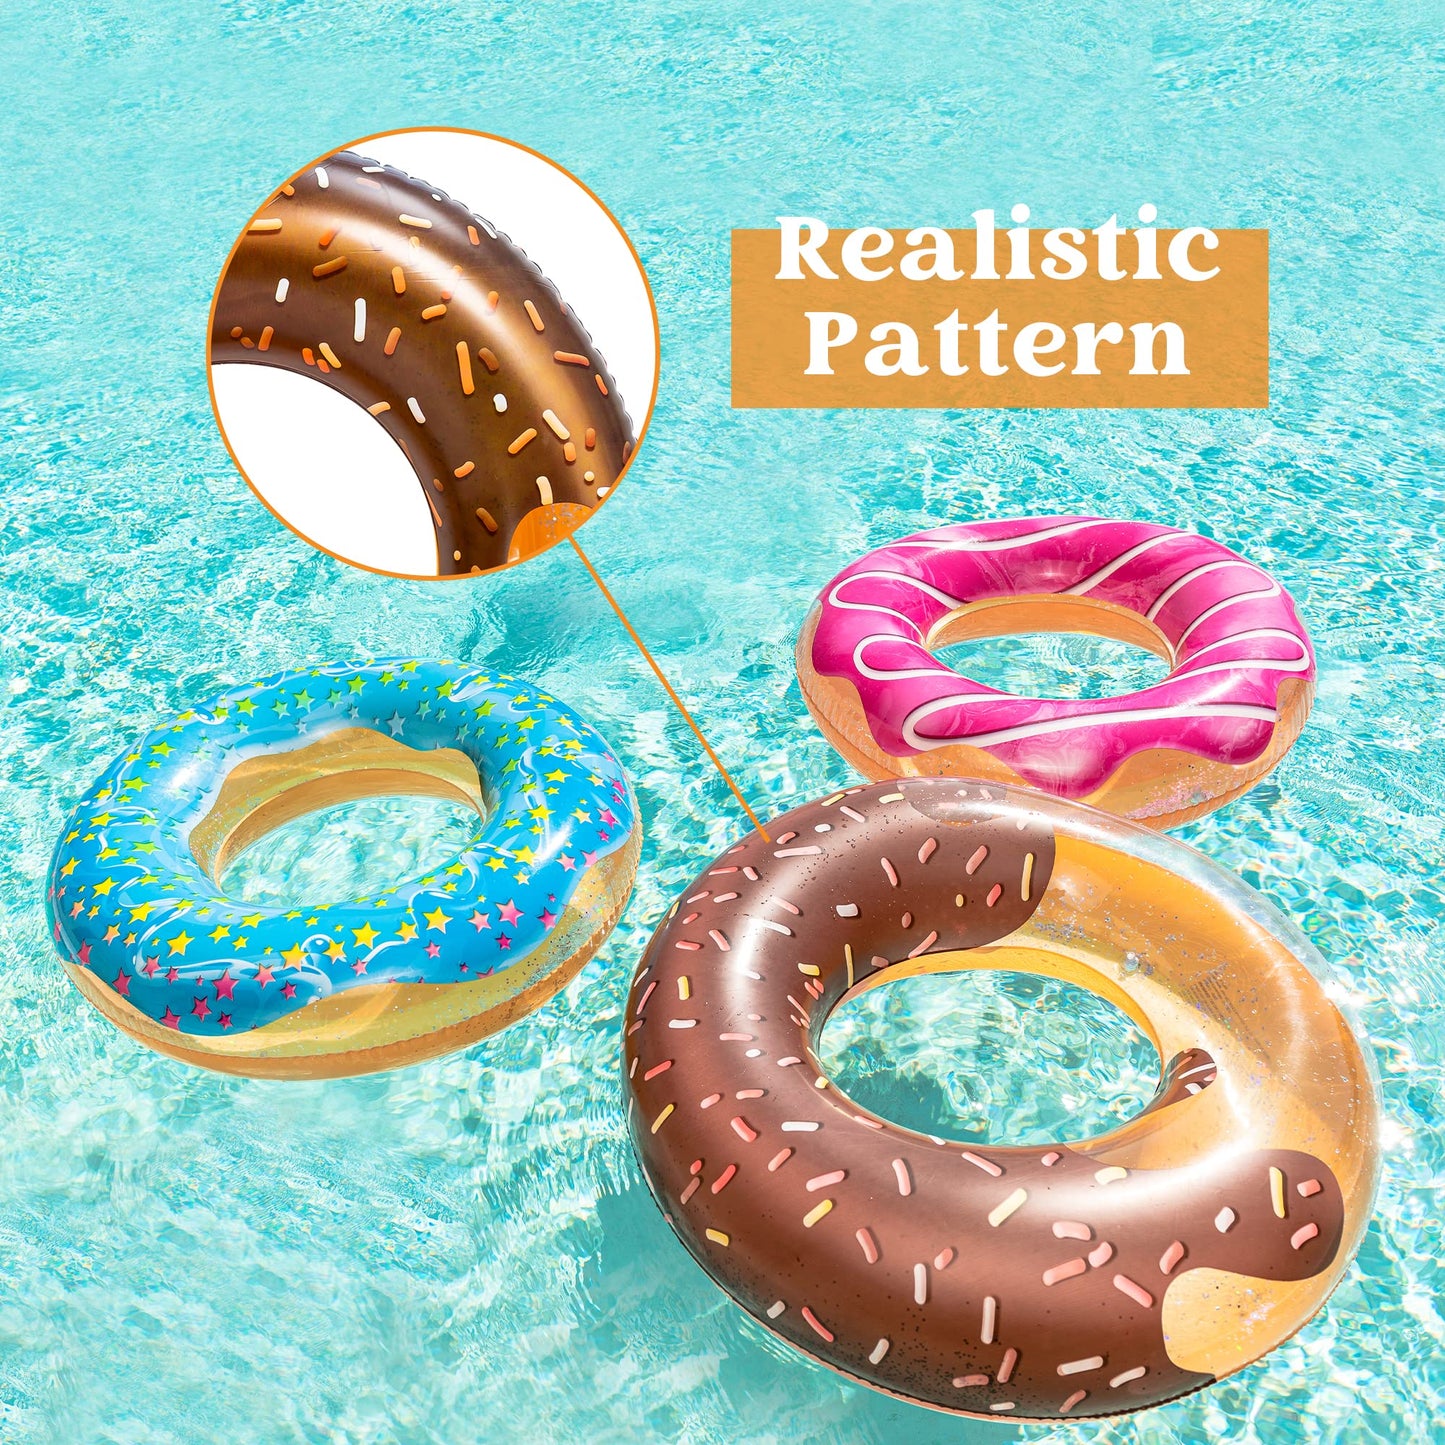 JOYIN Flotteur de piscine Donut avec paillettes 81,3 cm (lot de 3), jouets amusants pour piscine et fête de beignet